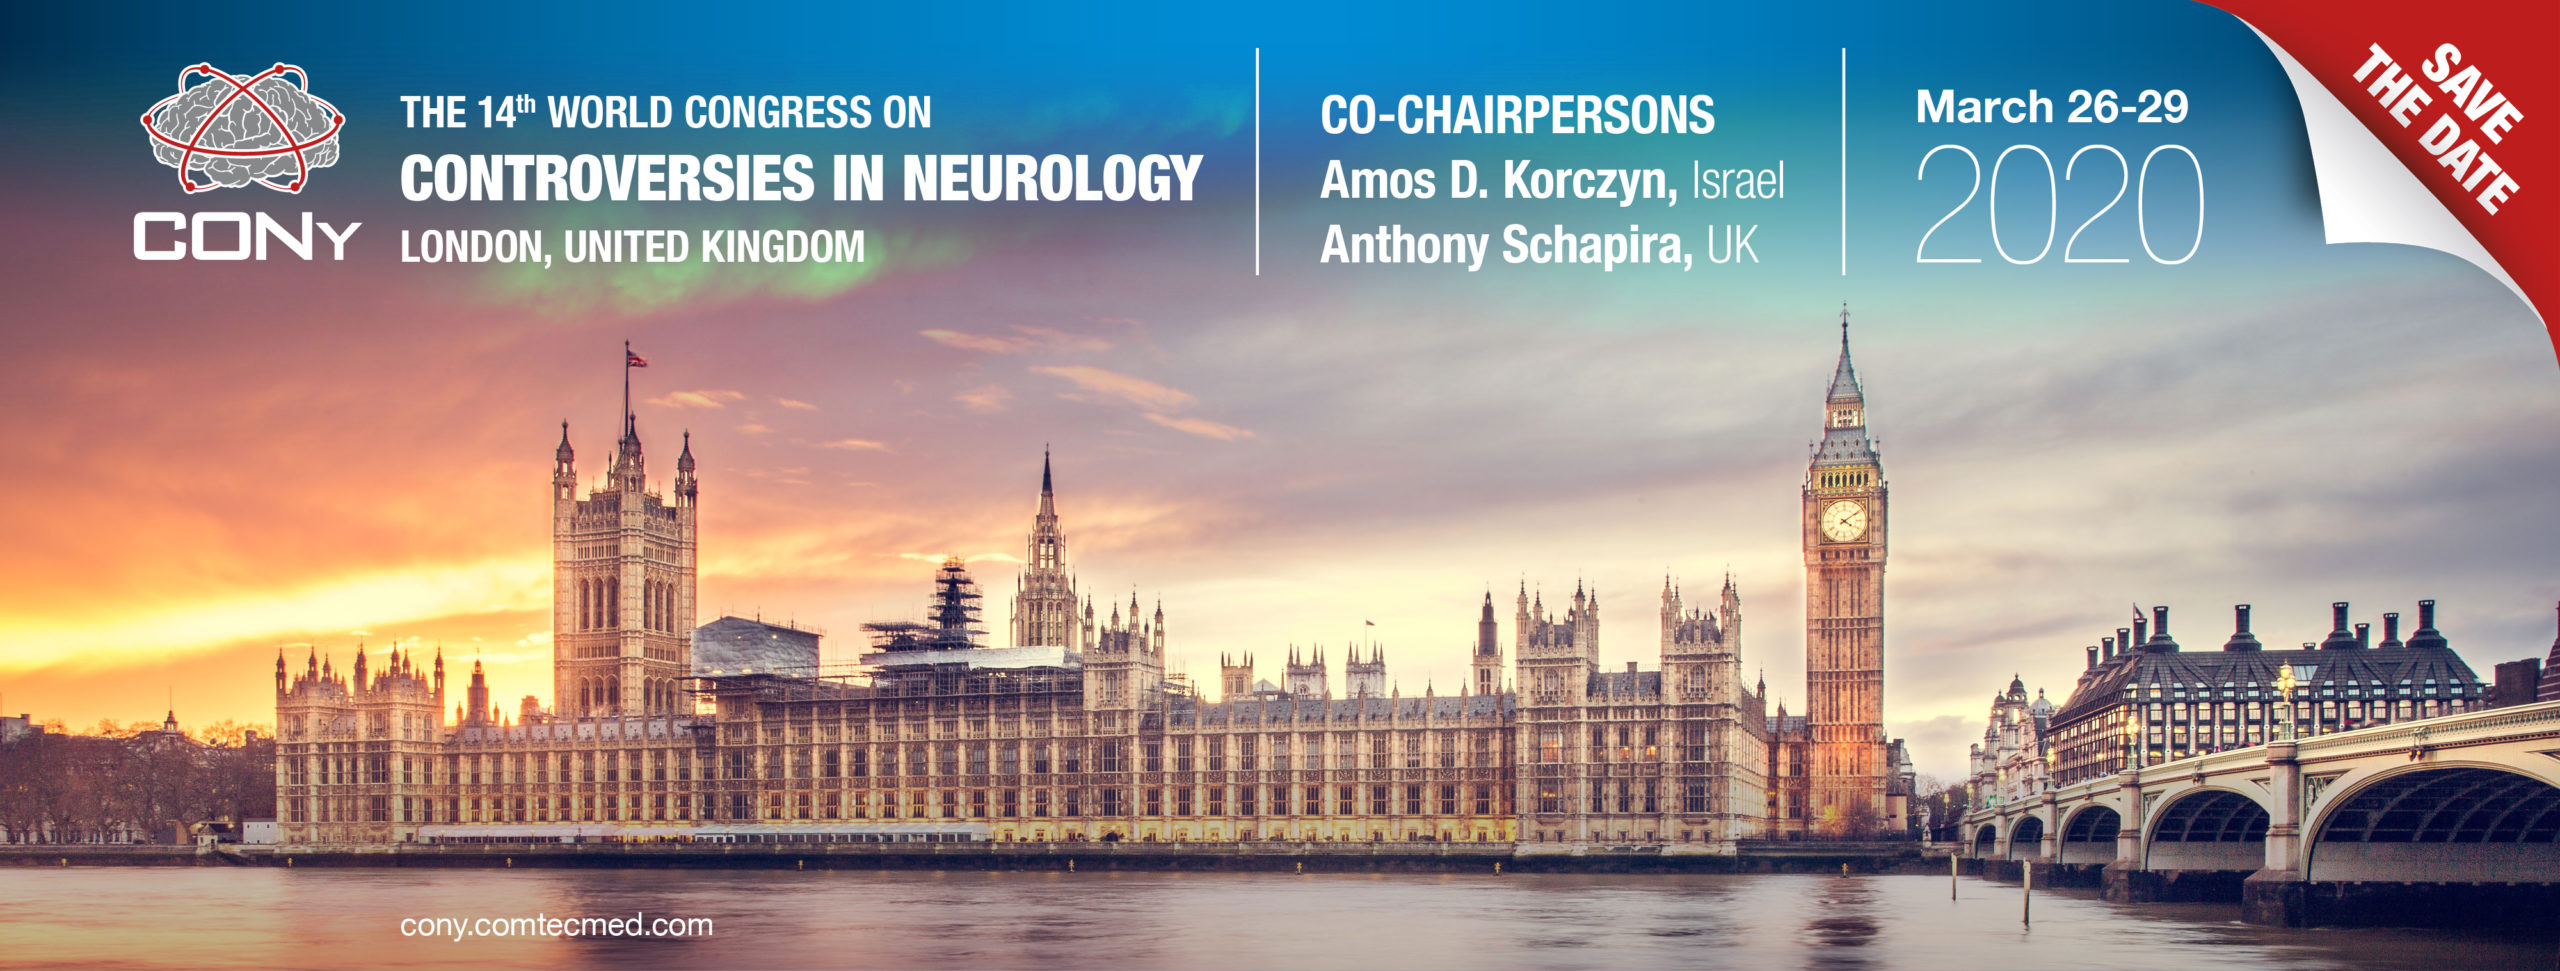 Du visar för närvarande 14th World Congress on Controversies in Neurology